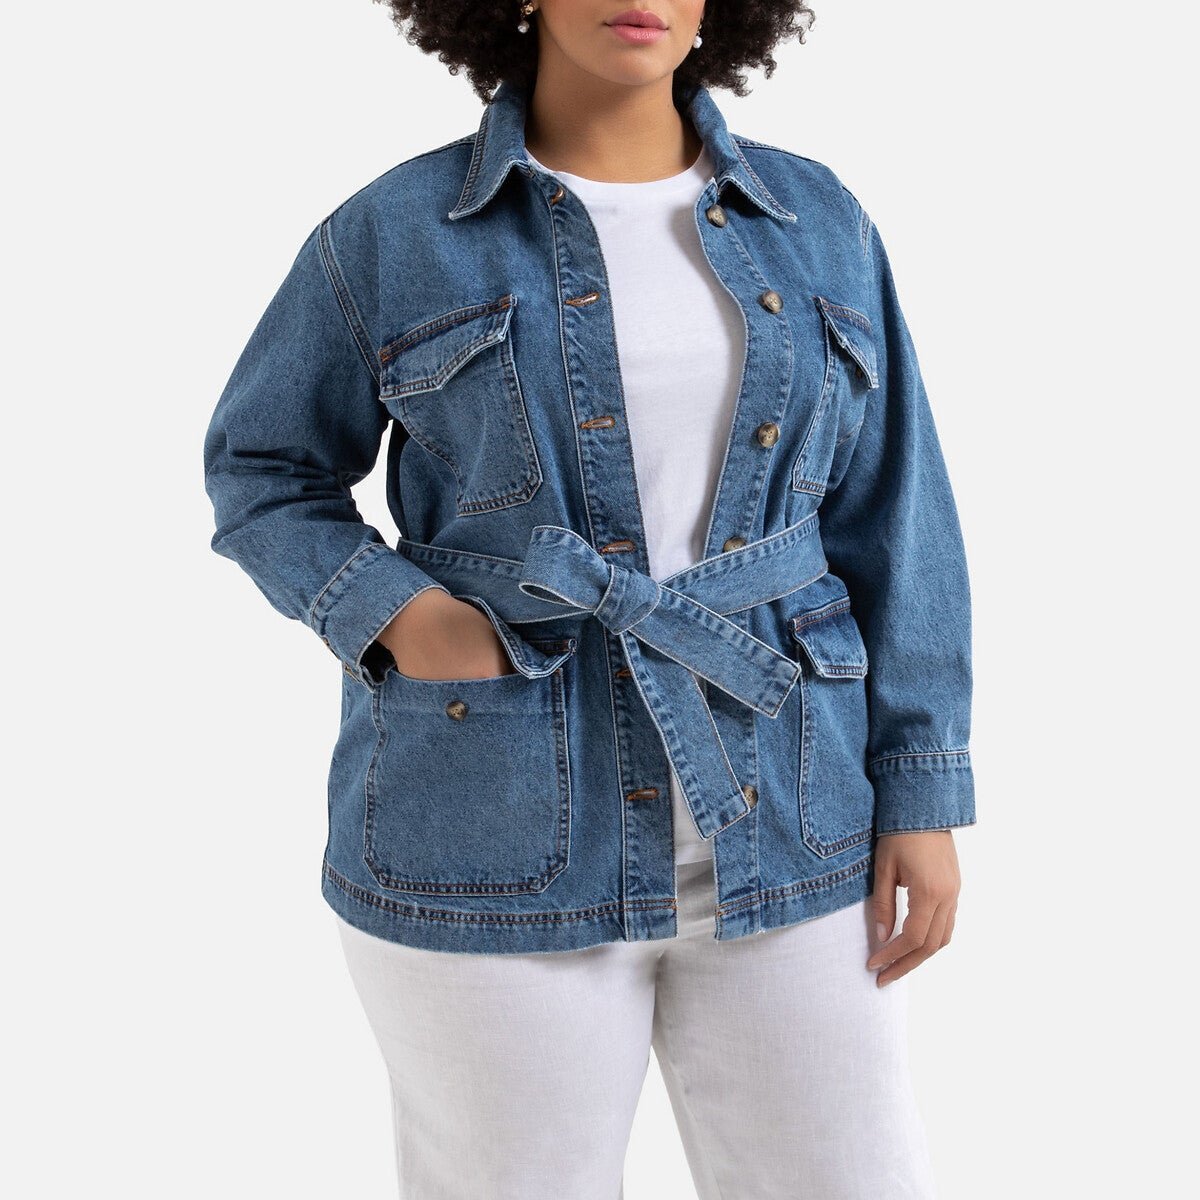 Купить джинсовую куртку женскую в интернет магазине. Джинсовый пиджак женский. Джинсовый жакет женский. Джинсовая куртка для полных женщин. Жакет из денима женский.